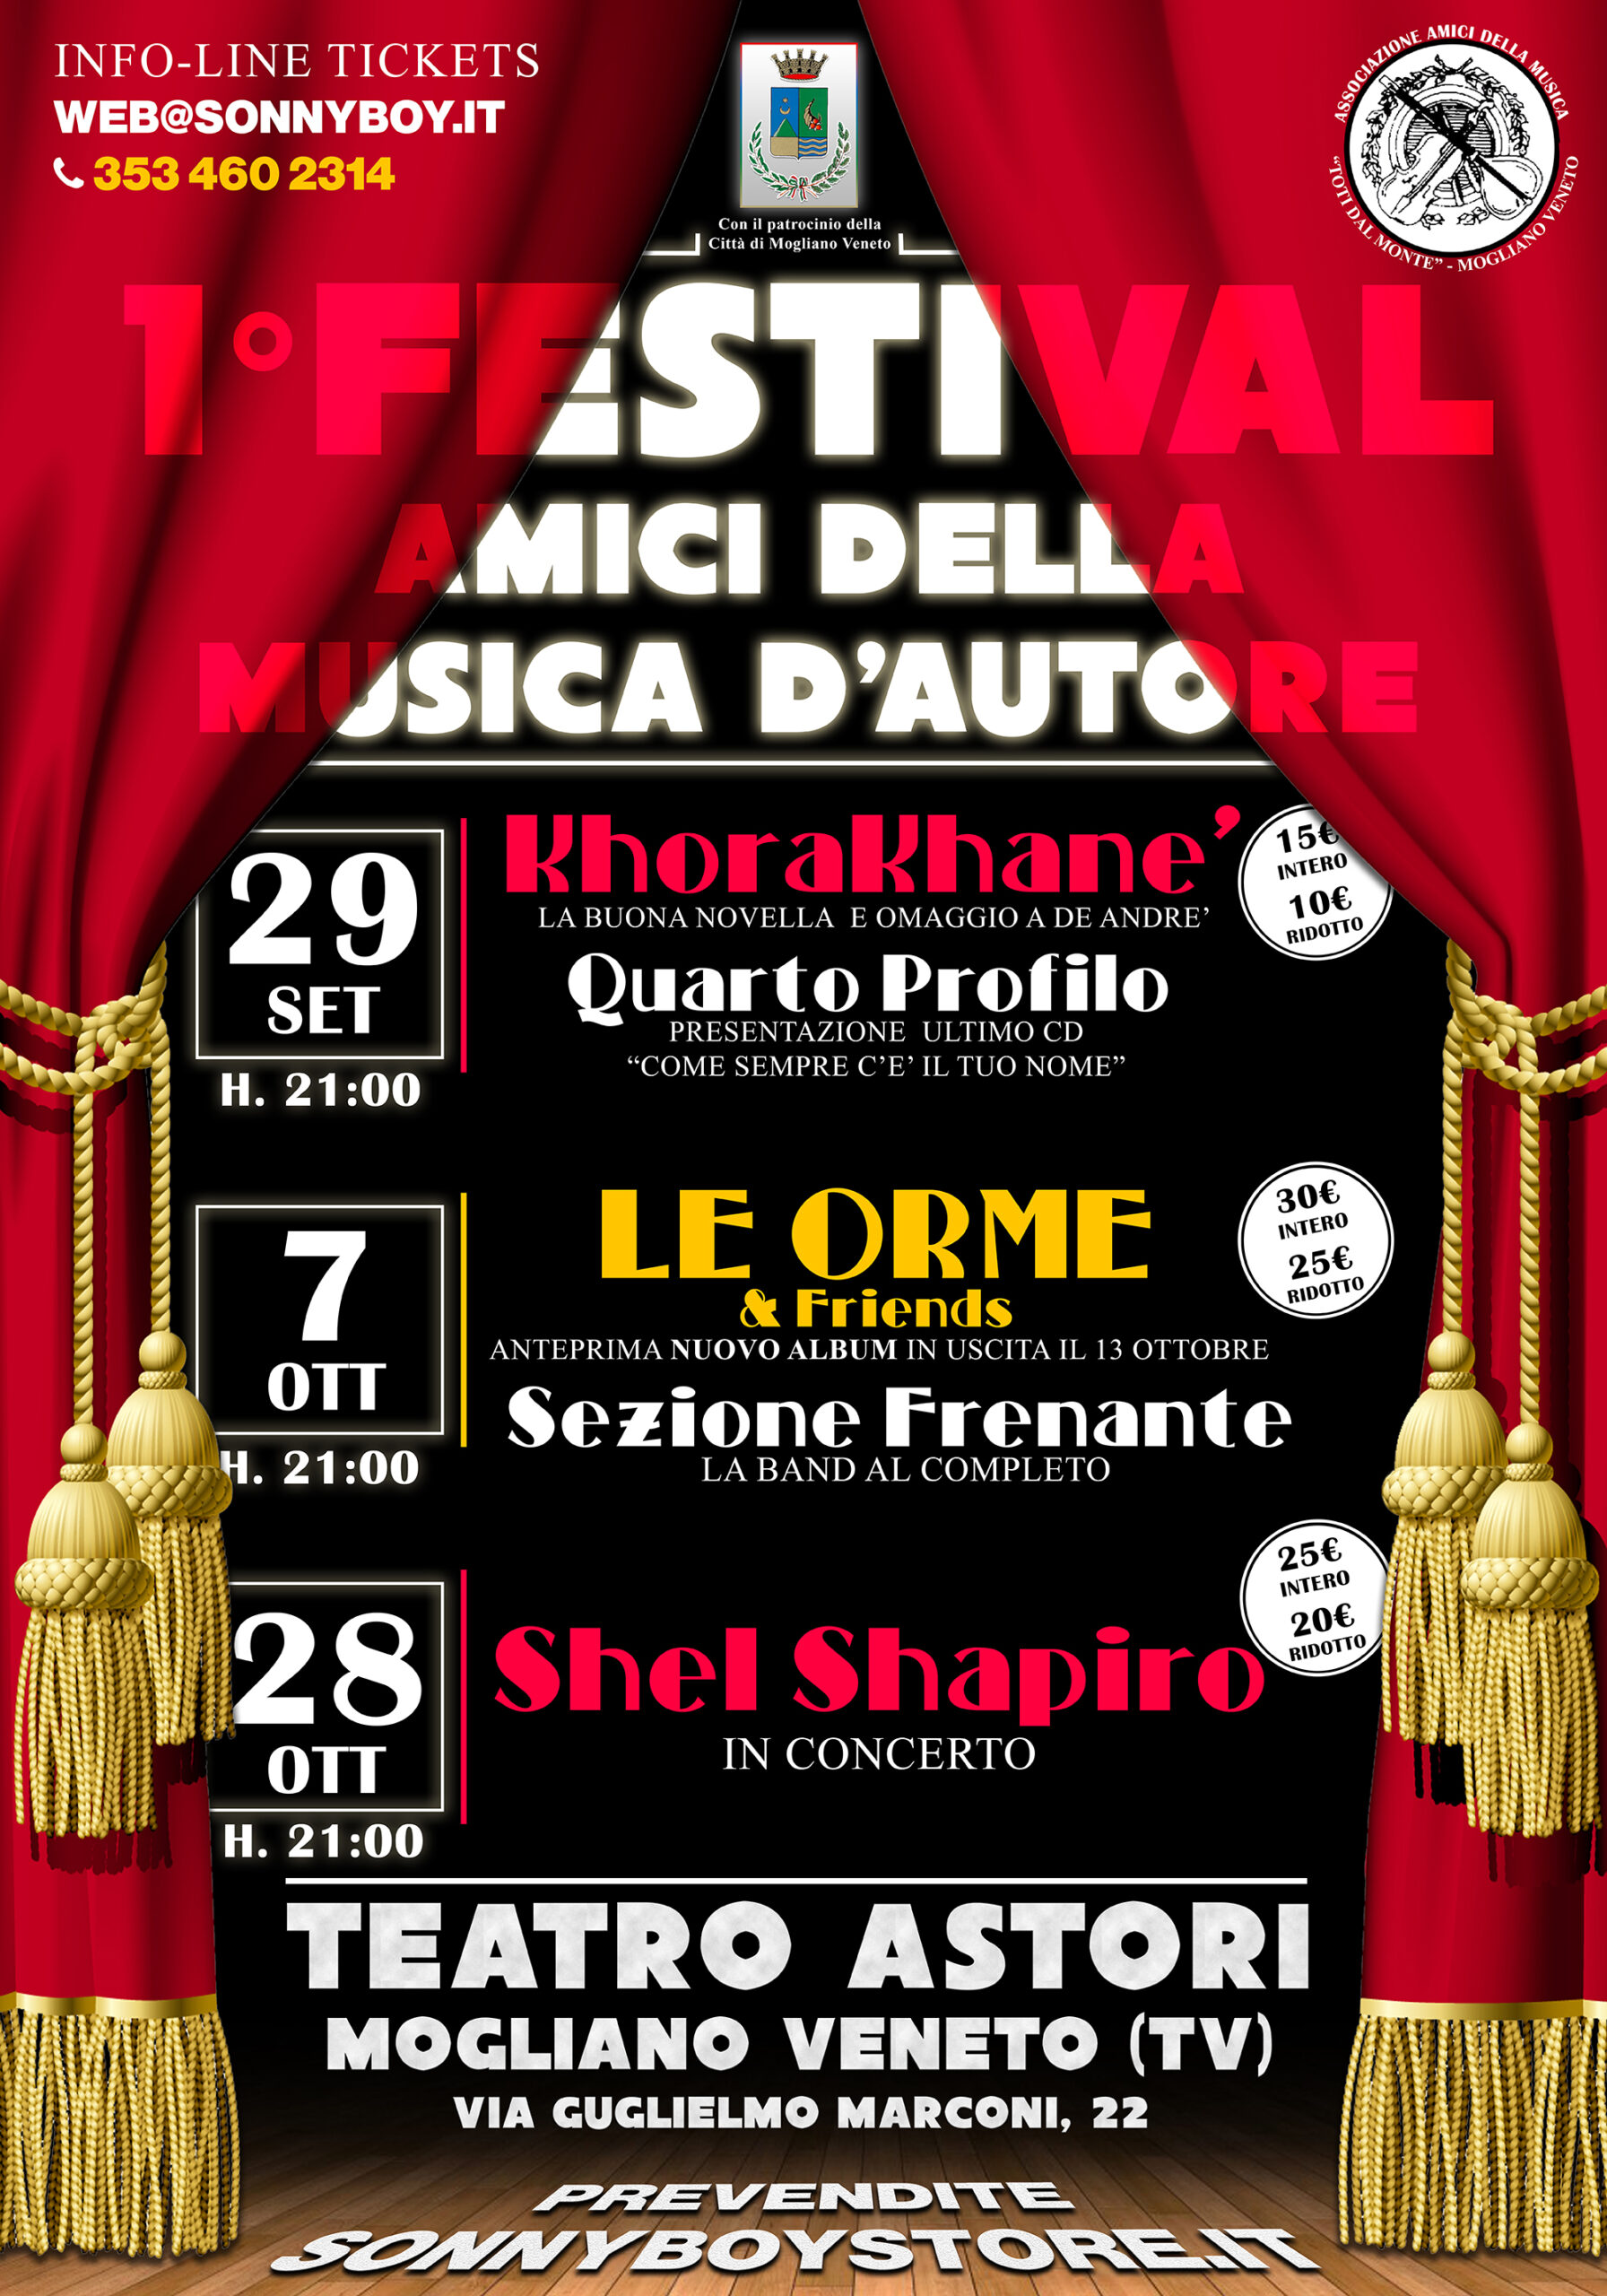 Shel Shapiro in concertro – 1° Festival della Musica d’autore – Teatro Astori – Mogliano Veneto (TV)